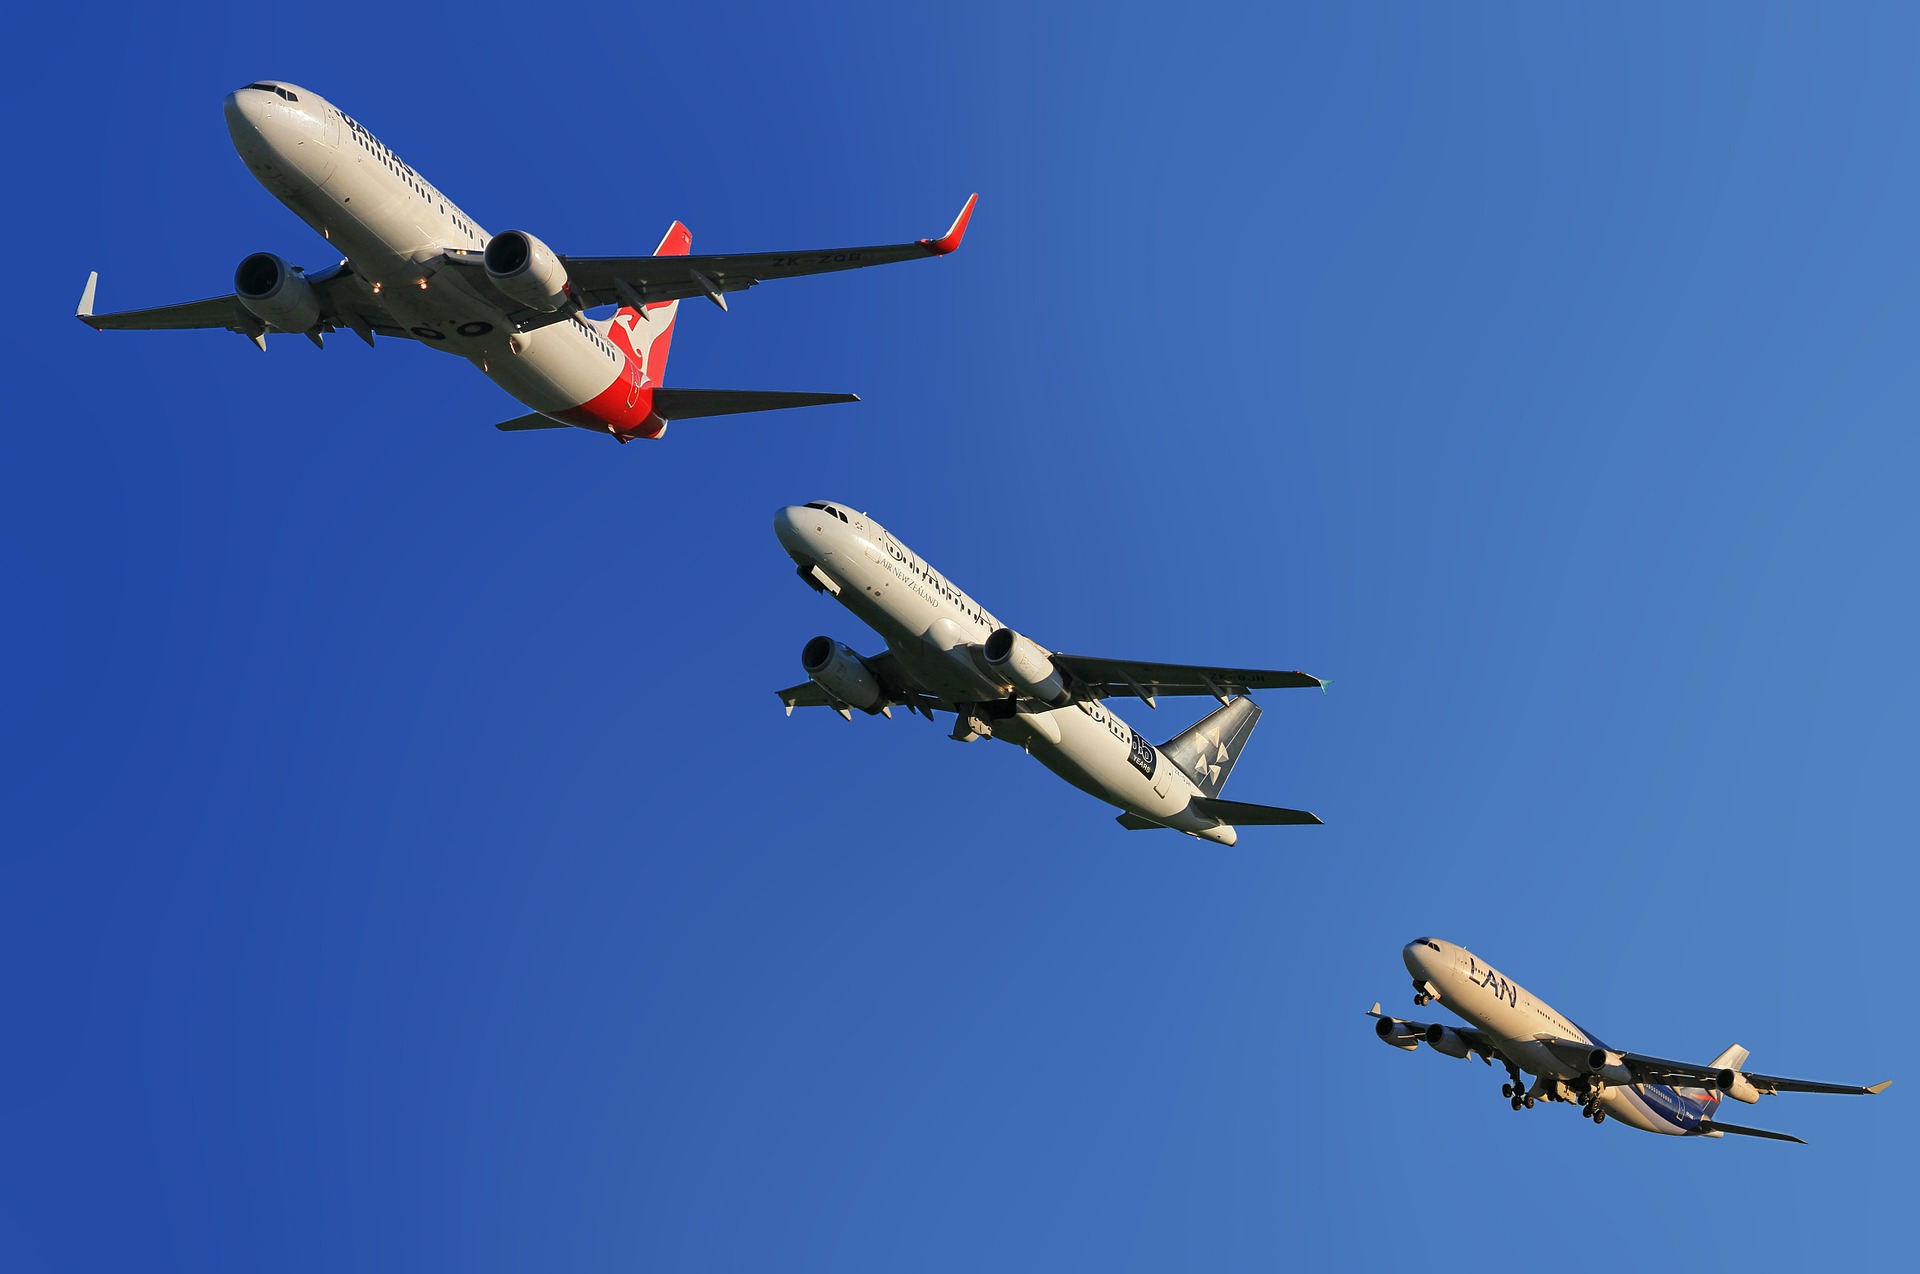 Exclusif : une étude affirme que la distribution aérienne directe coûte plus cher que le GDS (avec fichier)